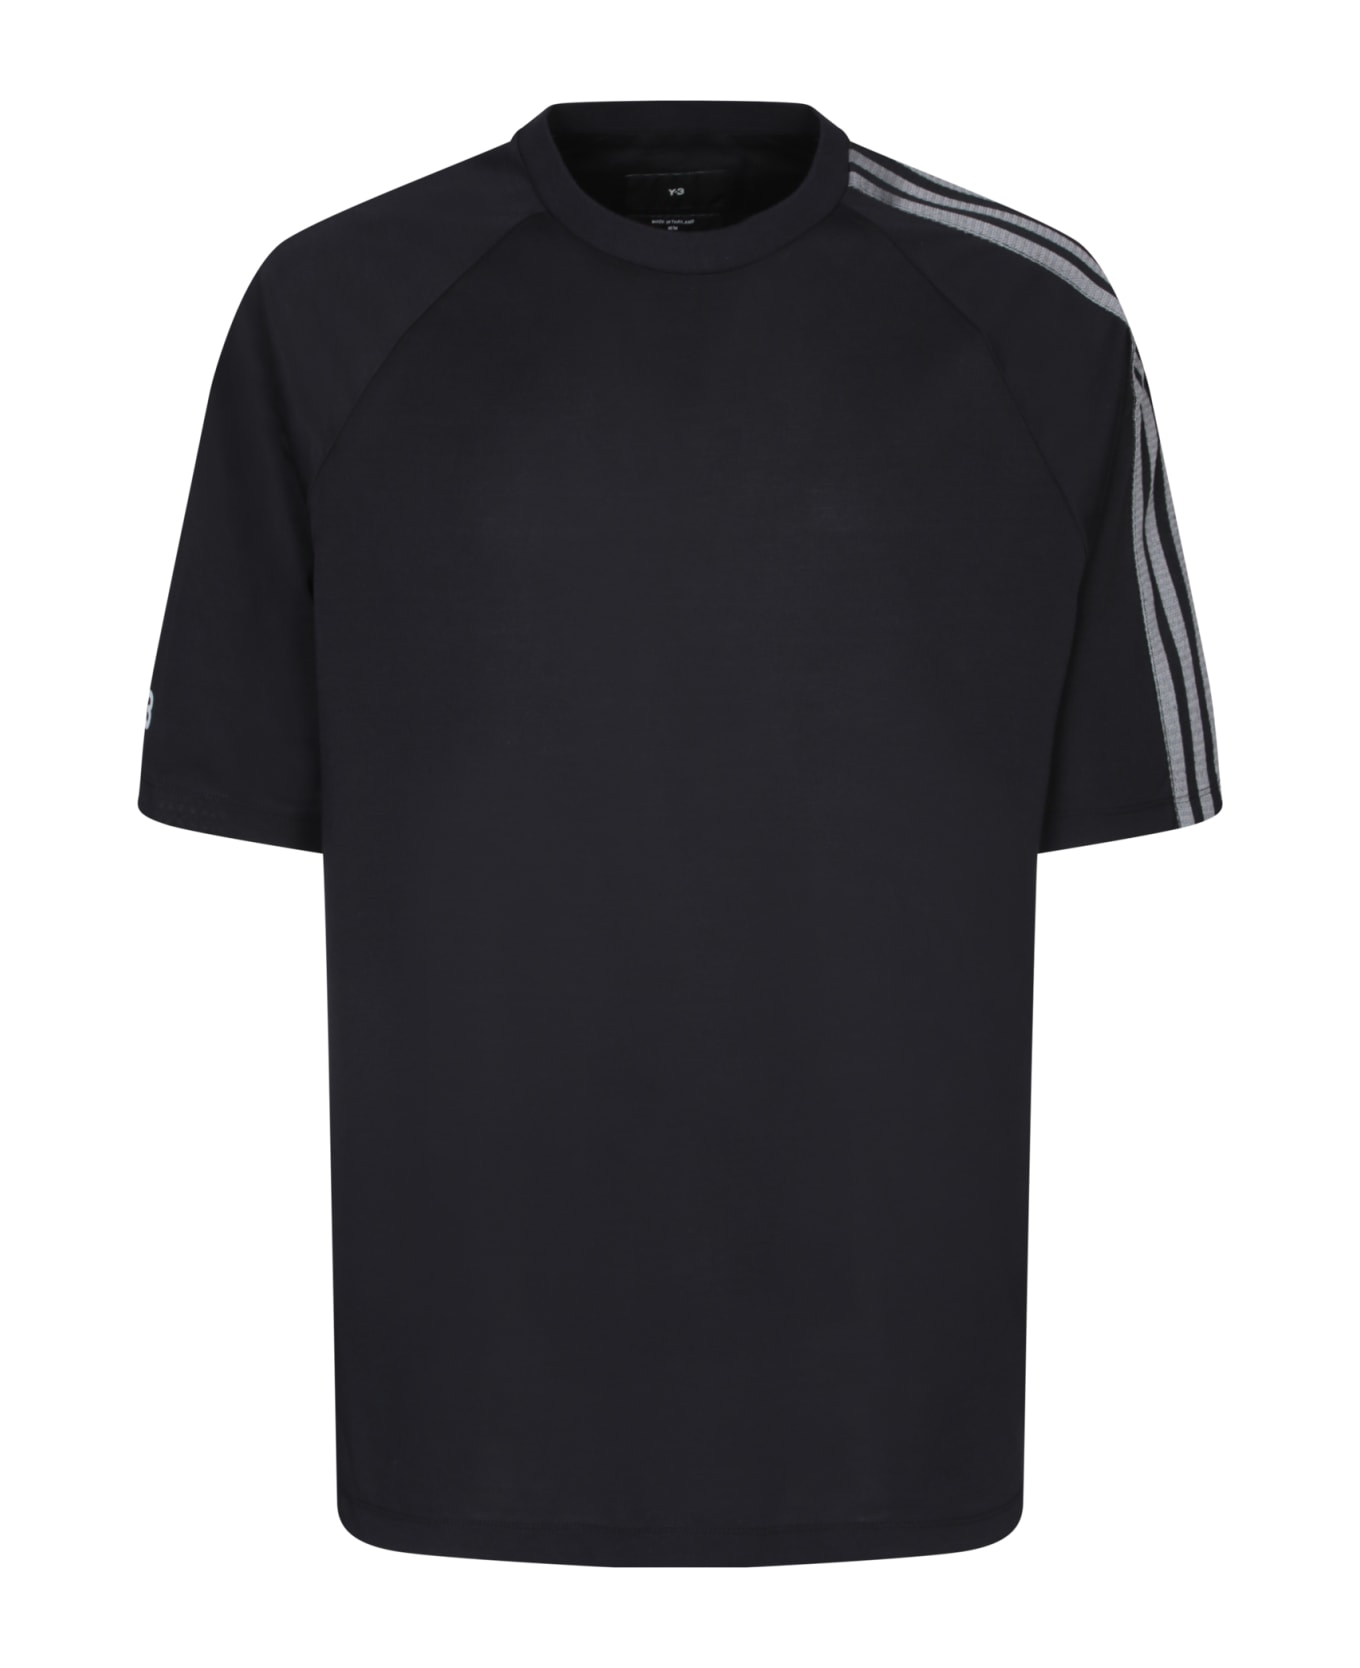 Y-3 Adidas Y-3 3s Black T-shirt - Black